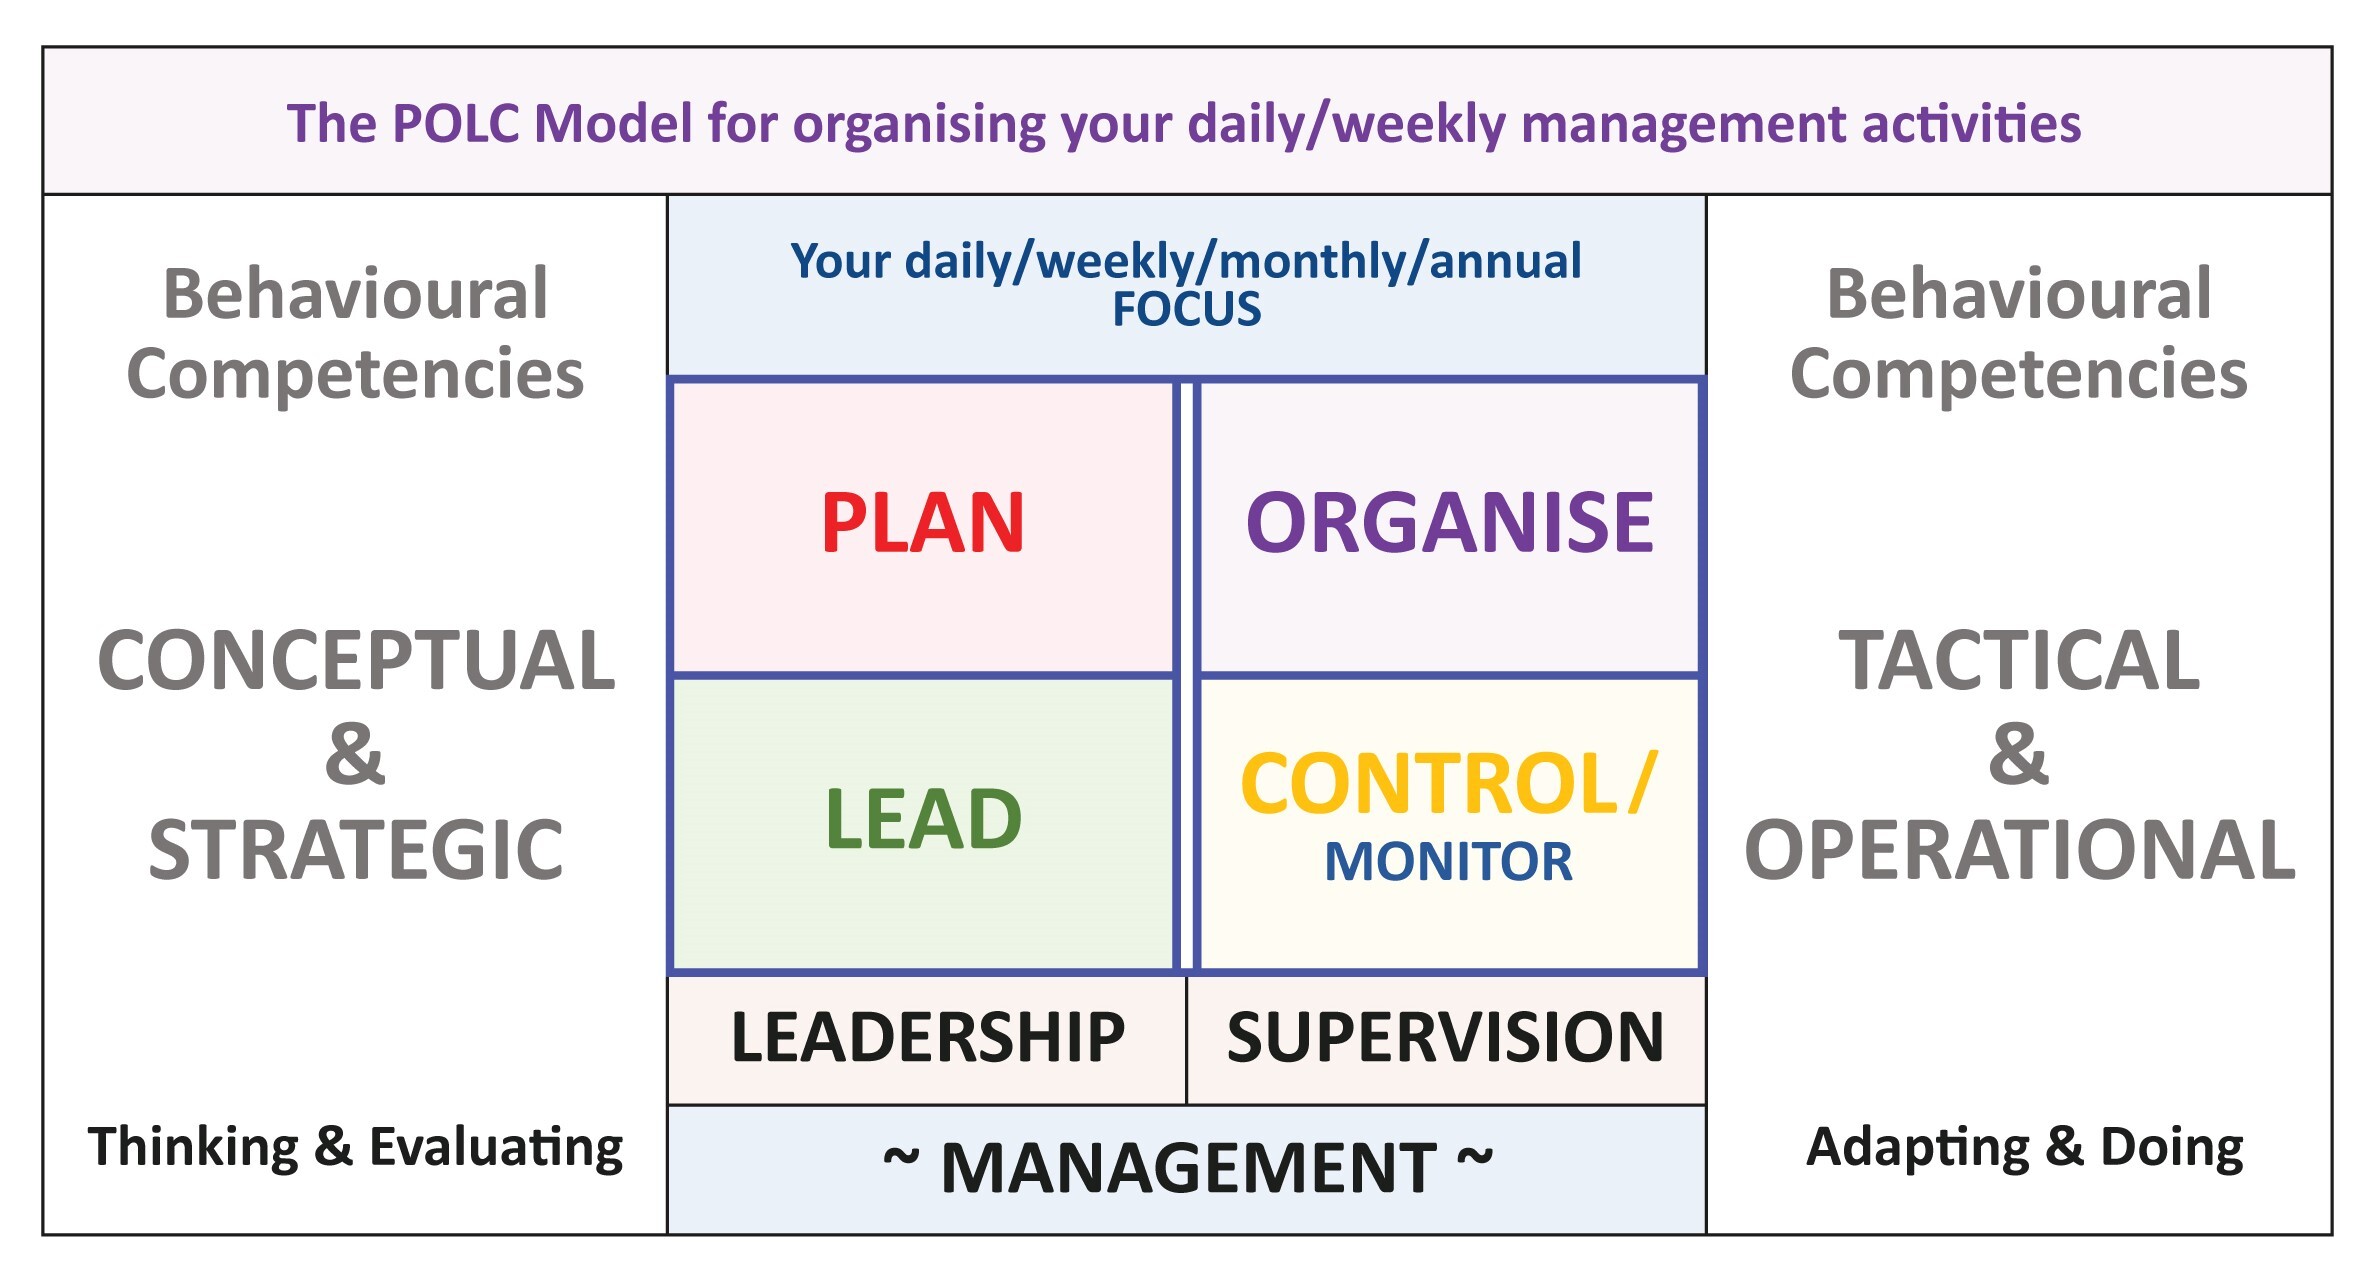 Elements of Management Intelligence